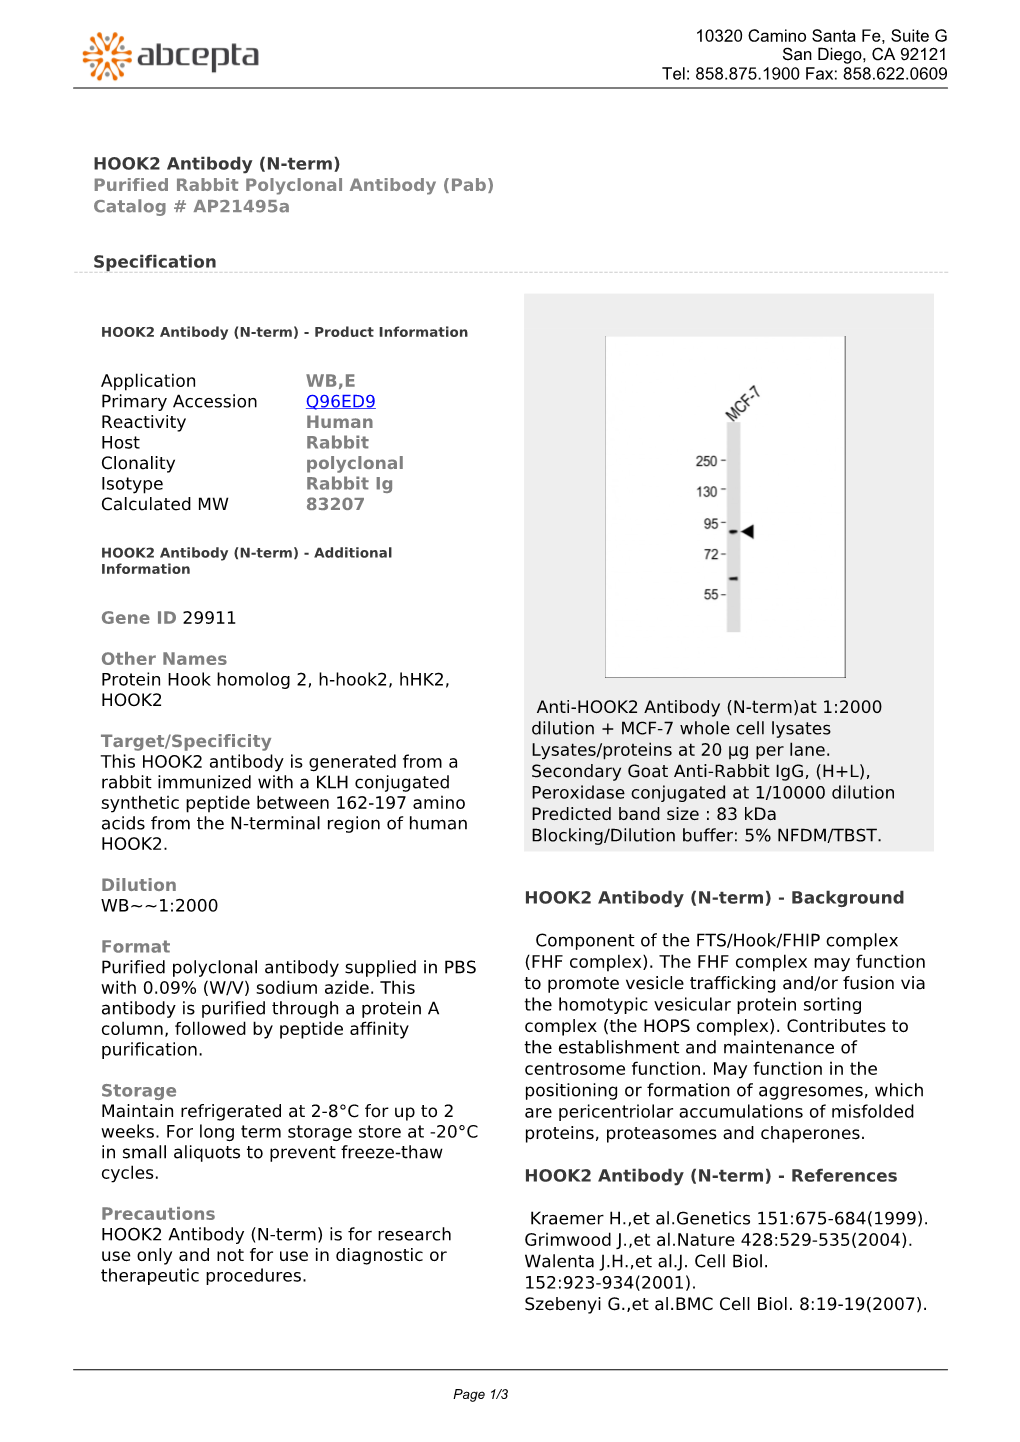 HOOK2 Antibody (N-Term) Purified Rabbit Polyclonal Antibody (Pab) Catalog # Ap21495a